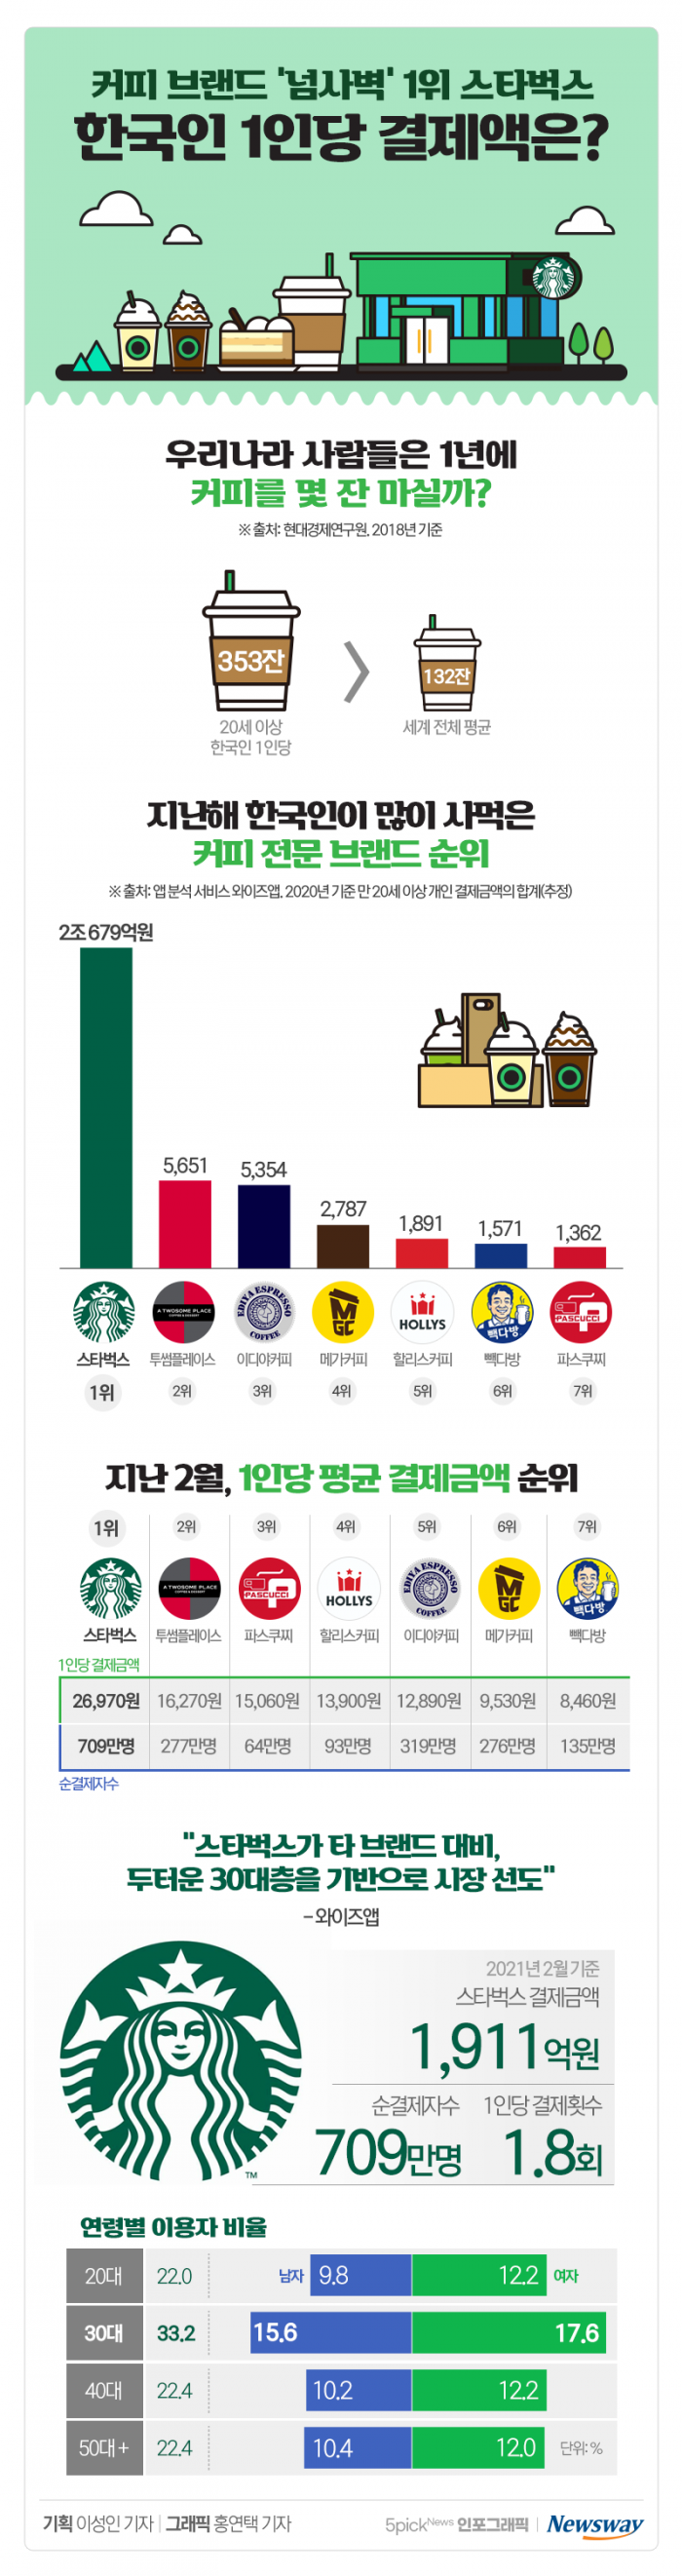 스타벅스 한국 이용자들, 한 달에 얼마씩 사먹었을까? 기사의 사진